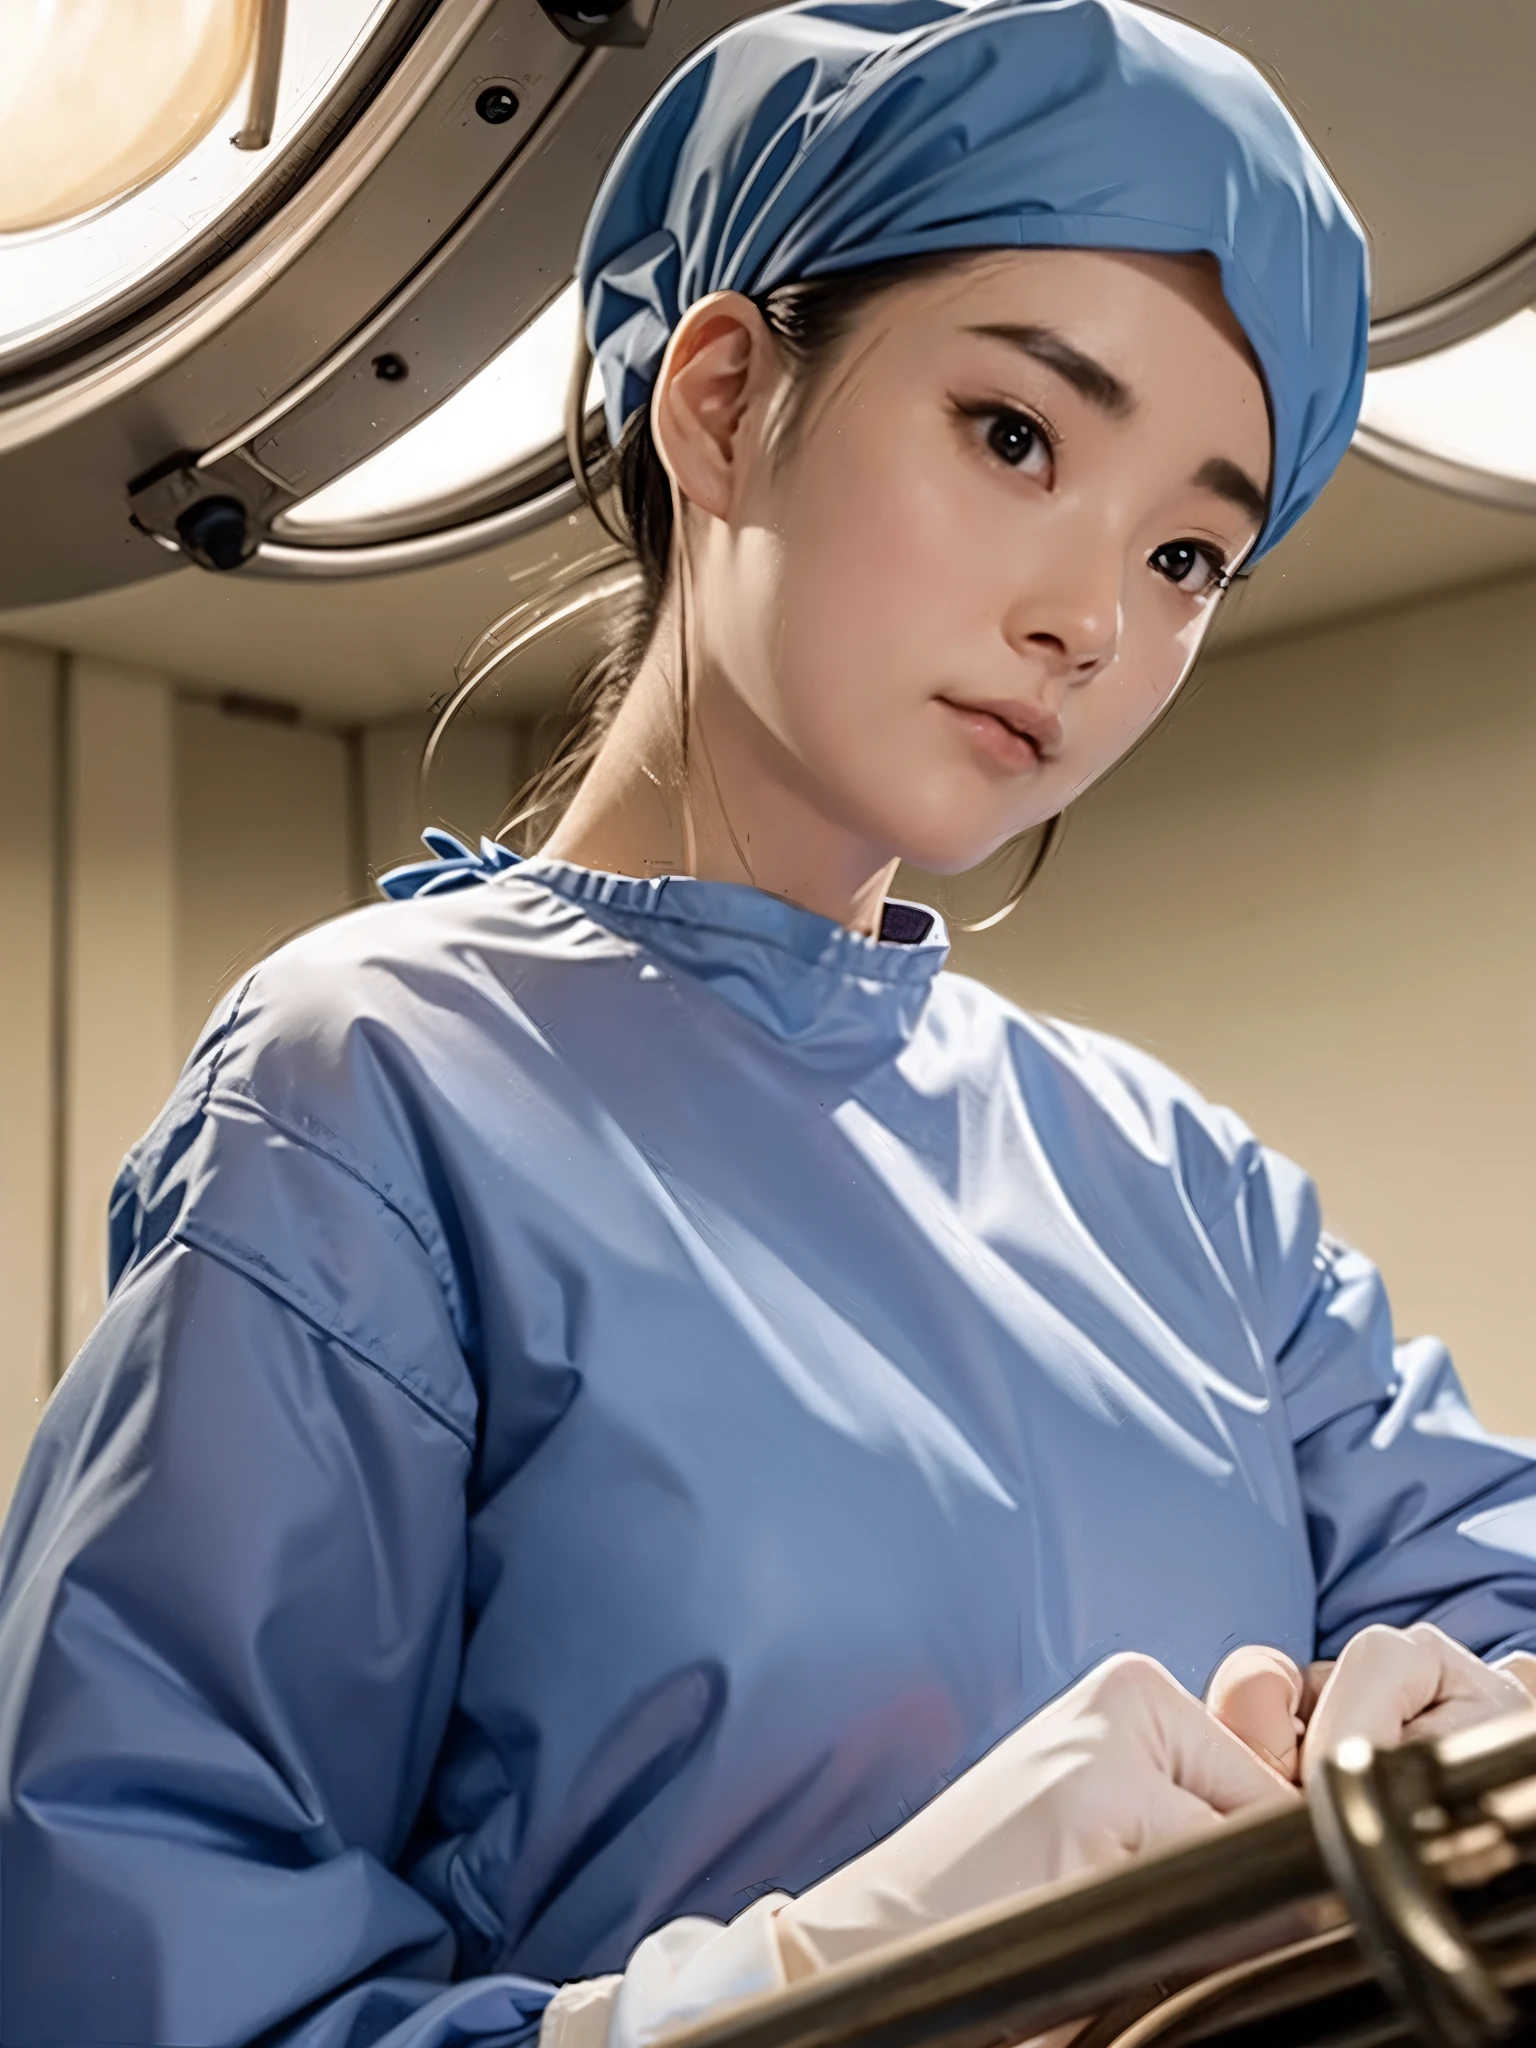 (คุณภาพสูงสุด,ความละเอียดสูง:1.2),รายละเอียดสุดยอด,(เหมือนจริง:1.37) ผู้หญิง 1 คน,สวมชุดผ่าตัดแขนยาว,สวมหน้ากากอนามัย,สวมถุงมือผ่าตัด,สวมหมวกผ่าตัด,ในห้องผ่าตัด,ใต้โคมไฟเหนือศีรษะ